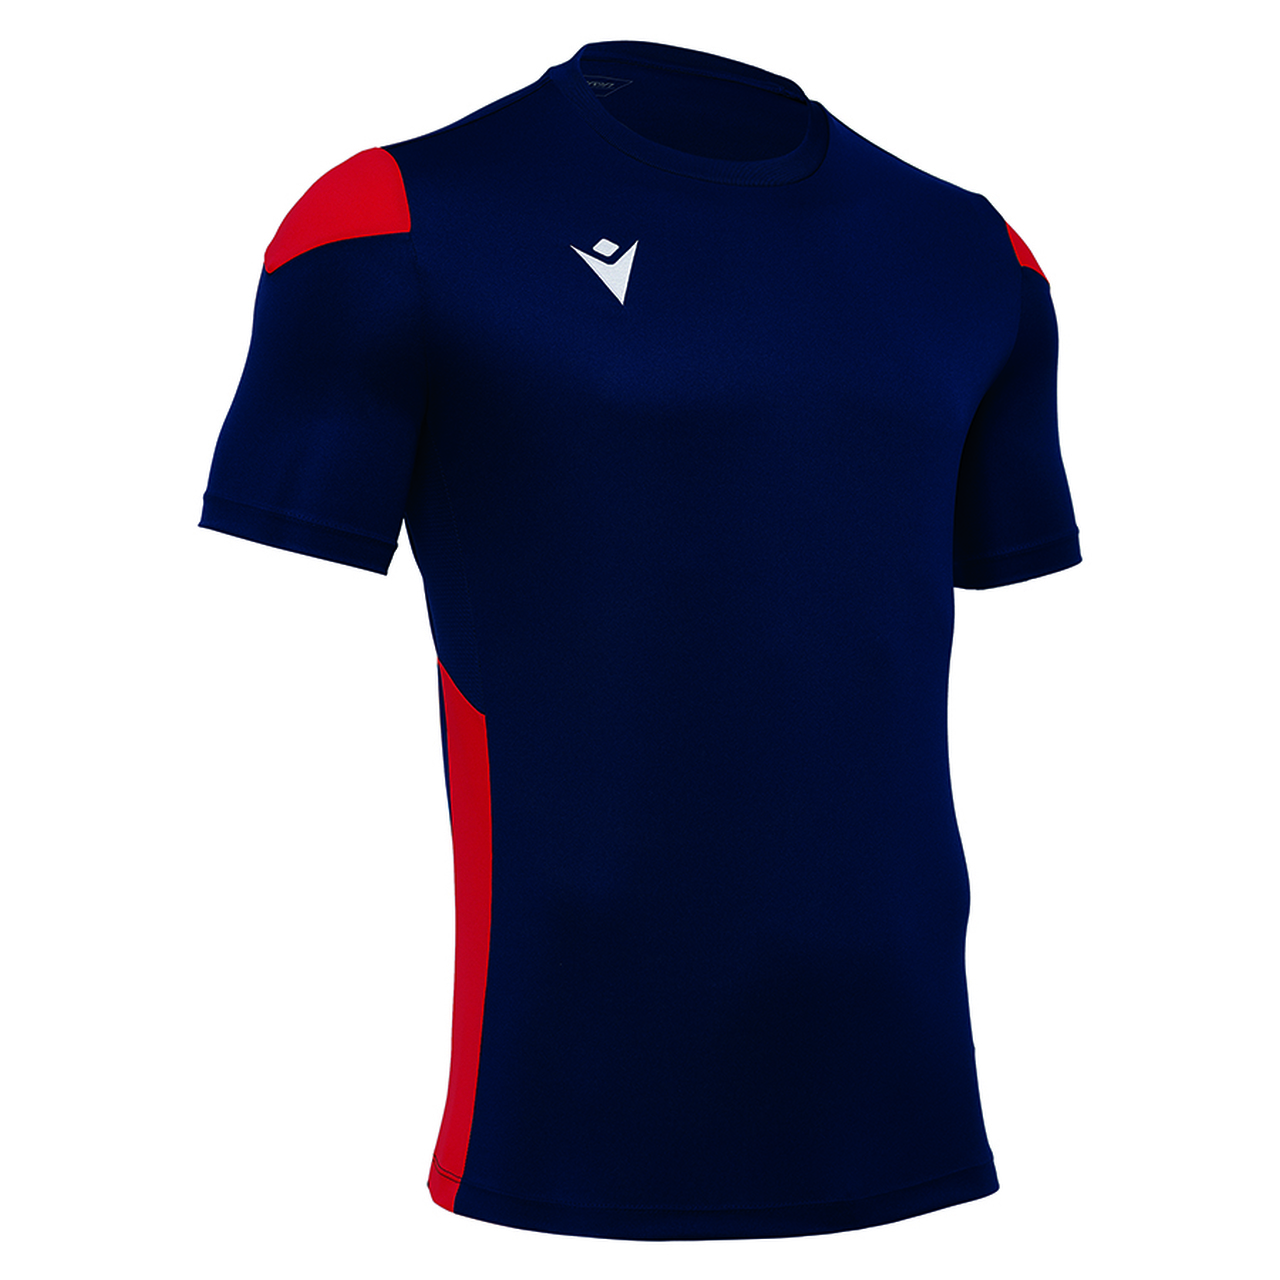 Волейбольная футболка мужская Macron POLIS Темно-синий/Красный